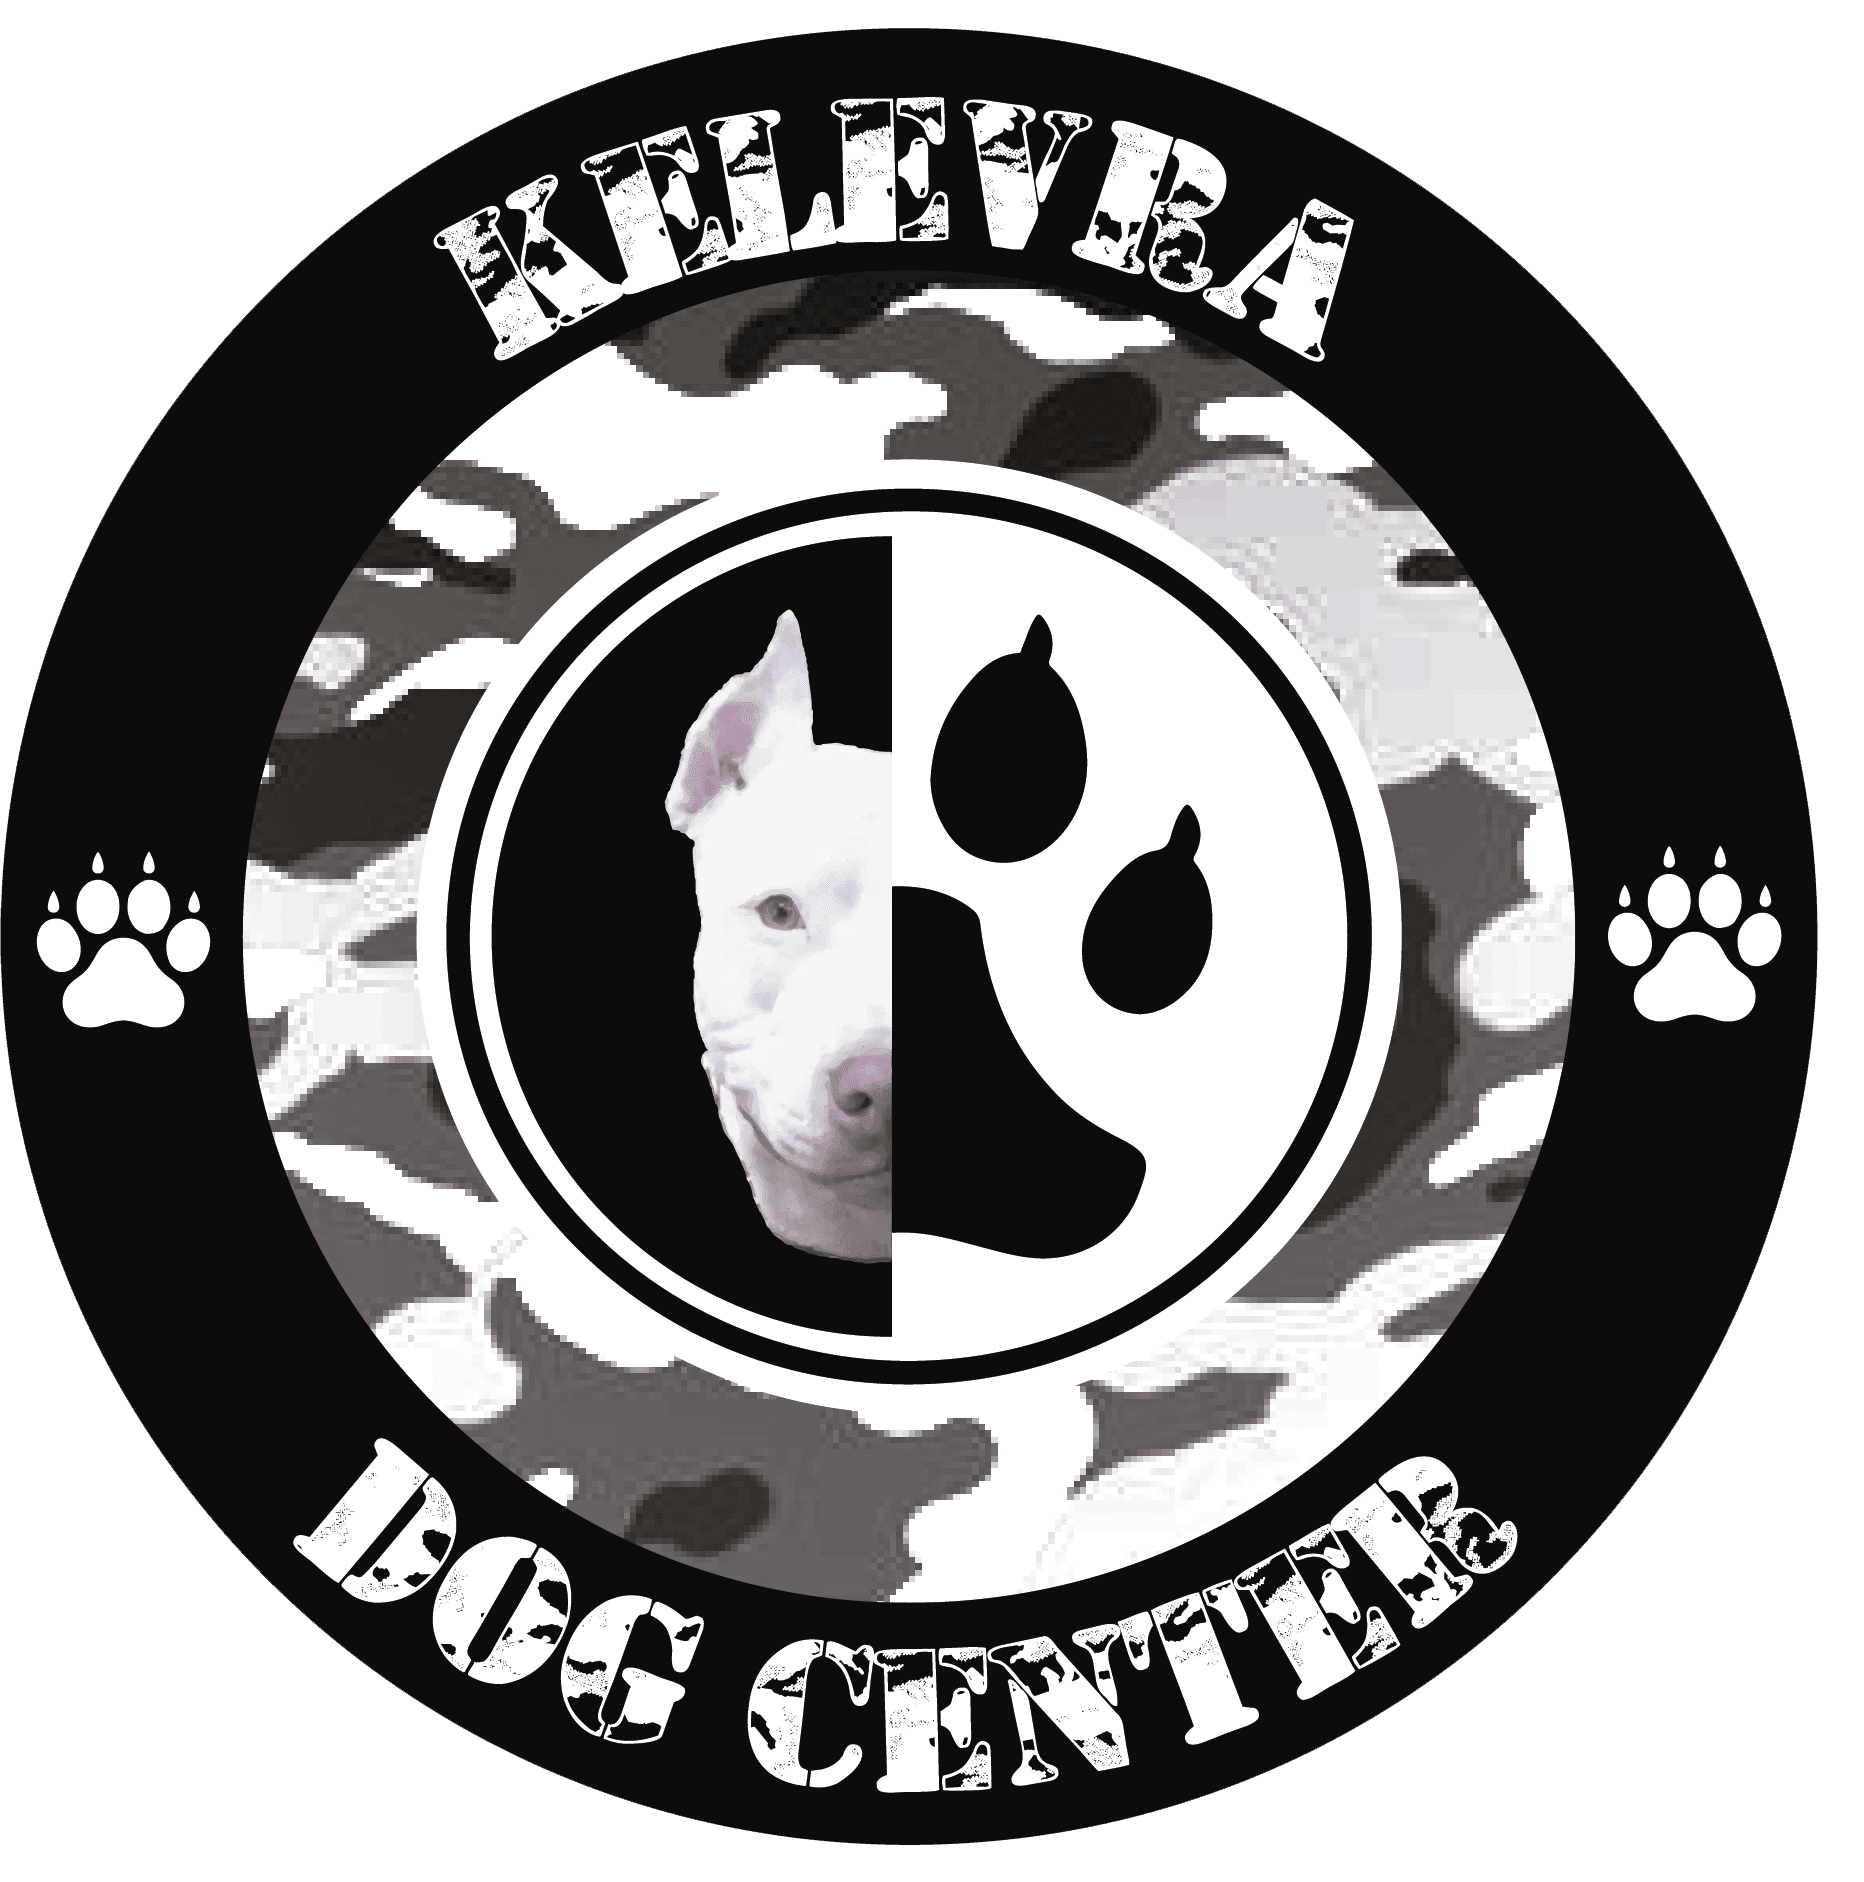 Kelevra Dog Center